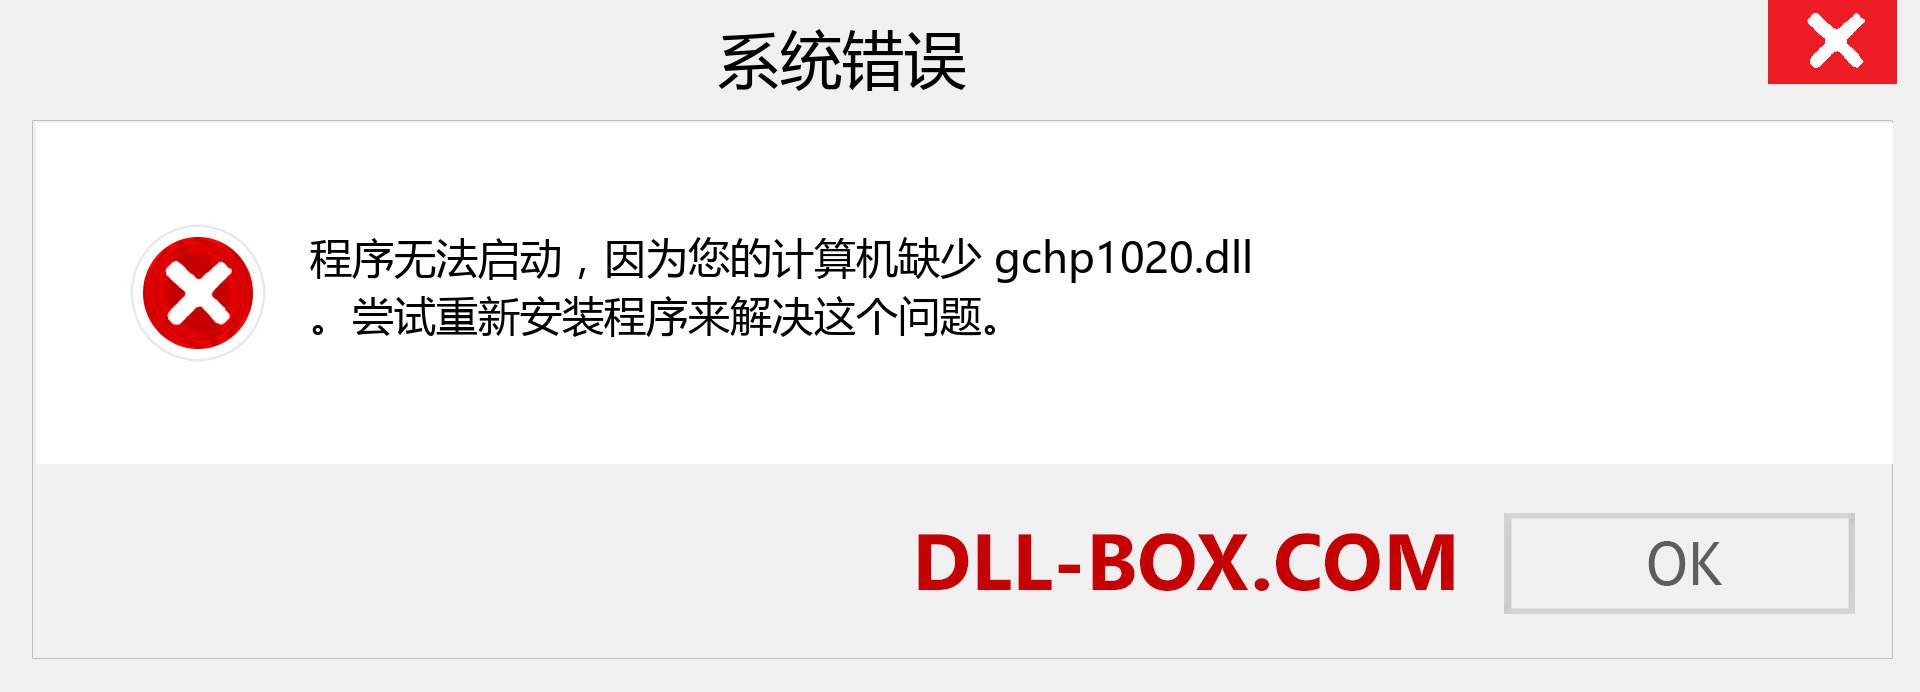 gchp1020.dll 文件丢失？。 适用于 Windows 7、8、10 的下载 - 修复 Windows、照片、图像上的 gchp1020 dll 丢失错误